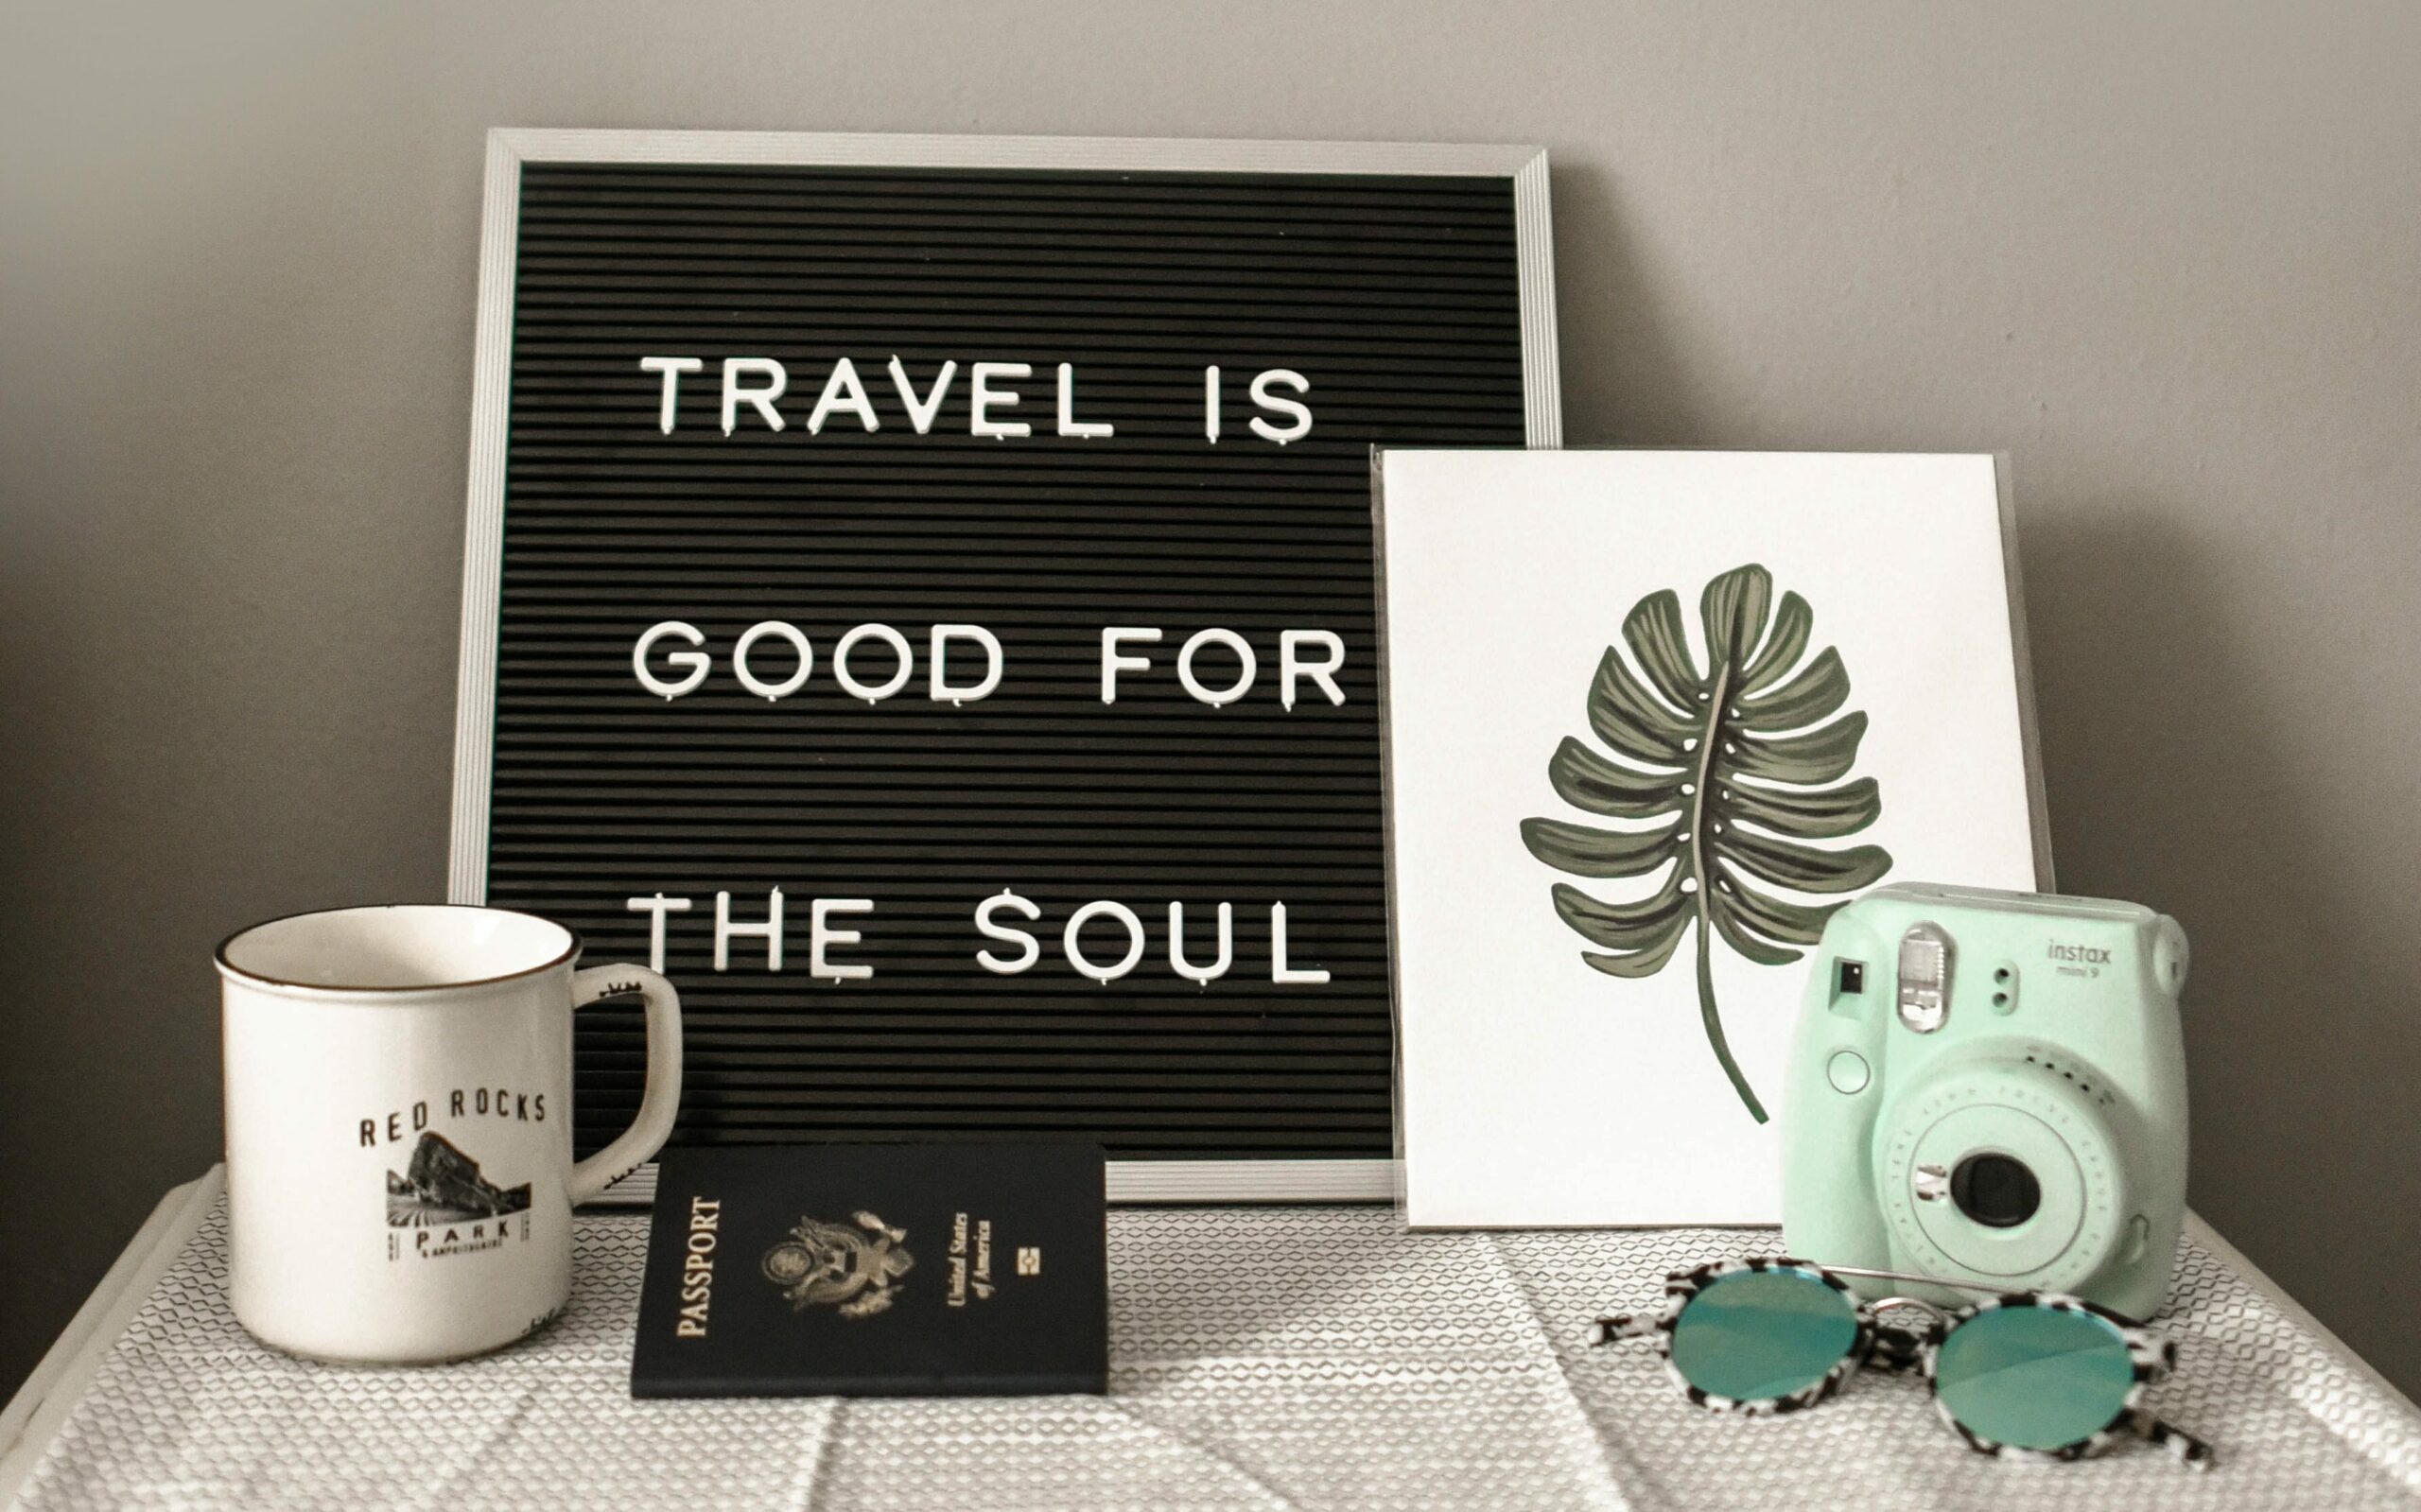 Napis "Travel is good for the soul", ilustracija monstere, polaroidni fotoaparat, skodelica, potni list in očala na mizi. 